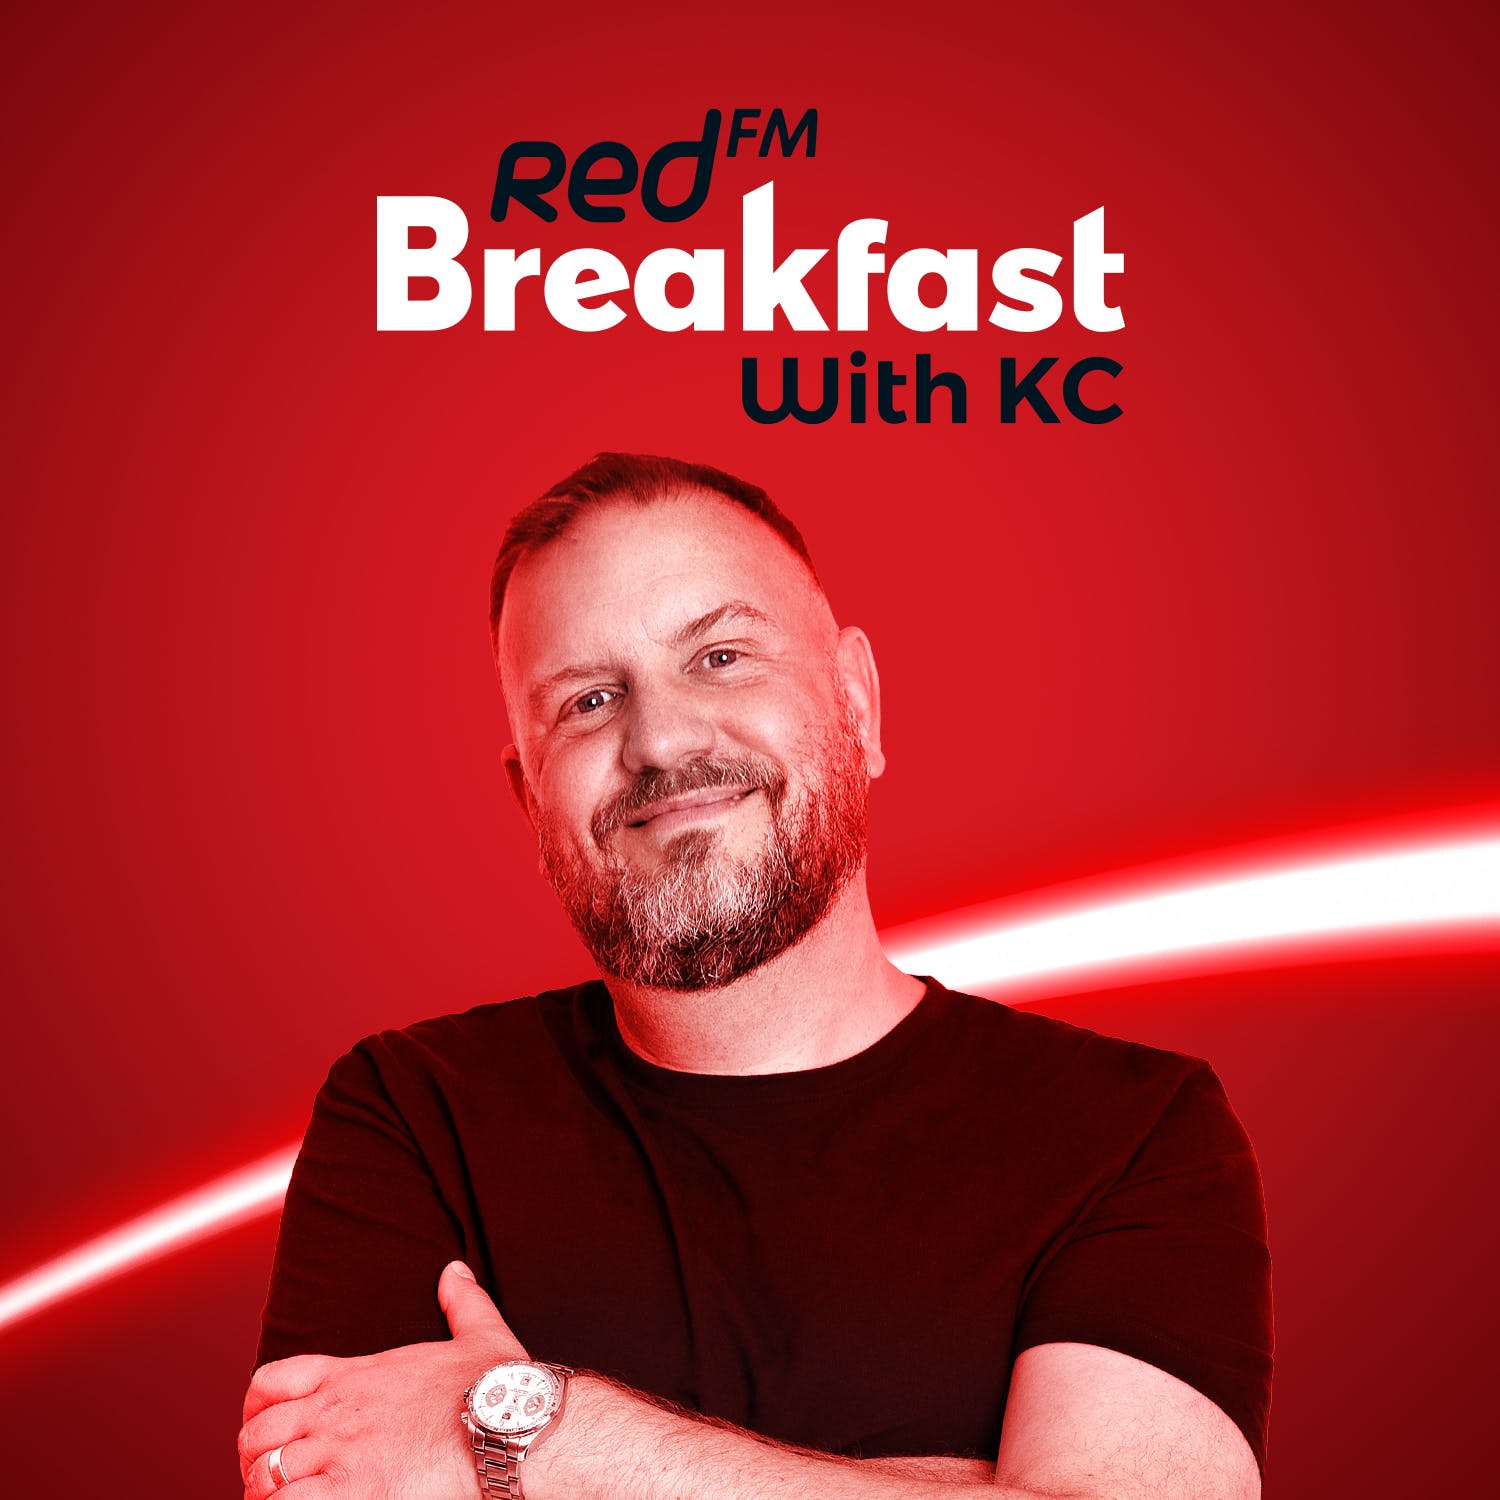 Red FM Breakfast Rewind